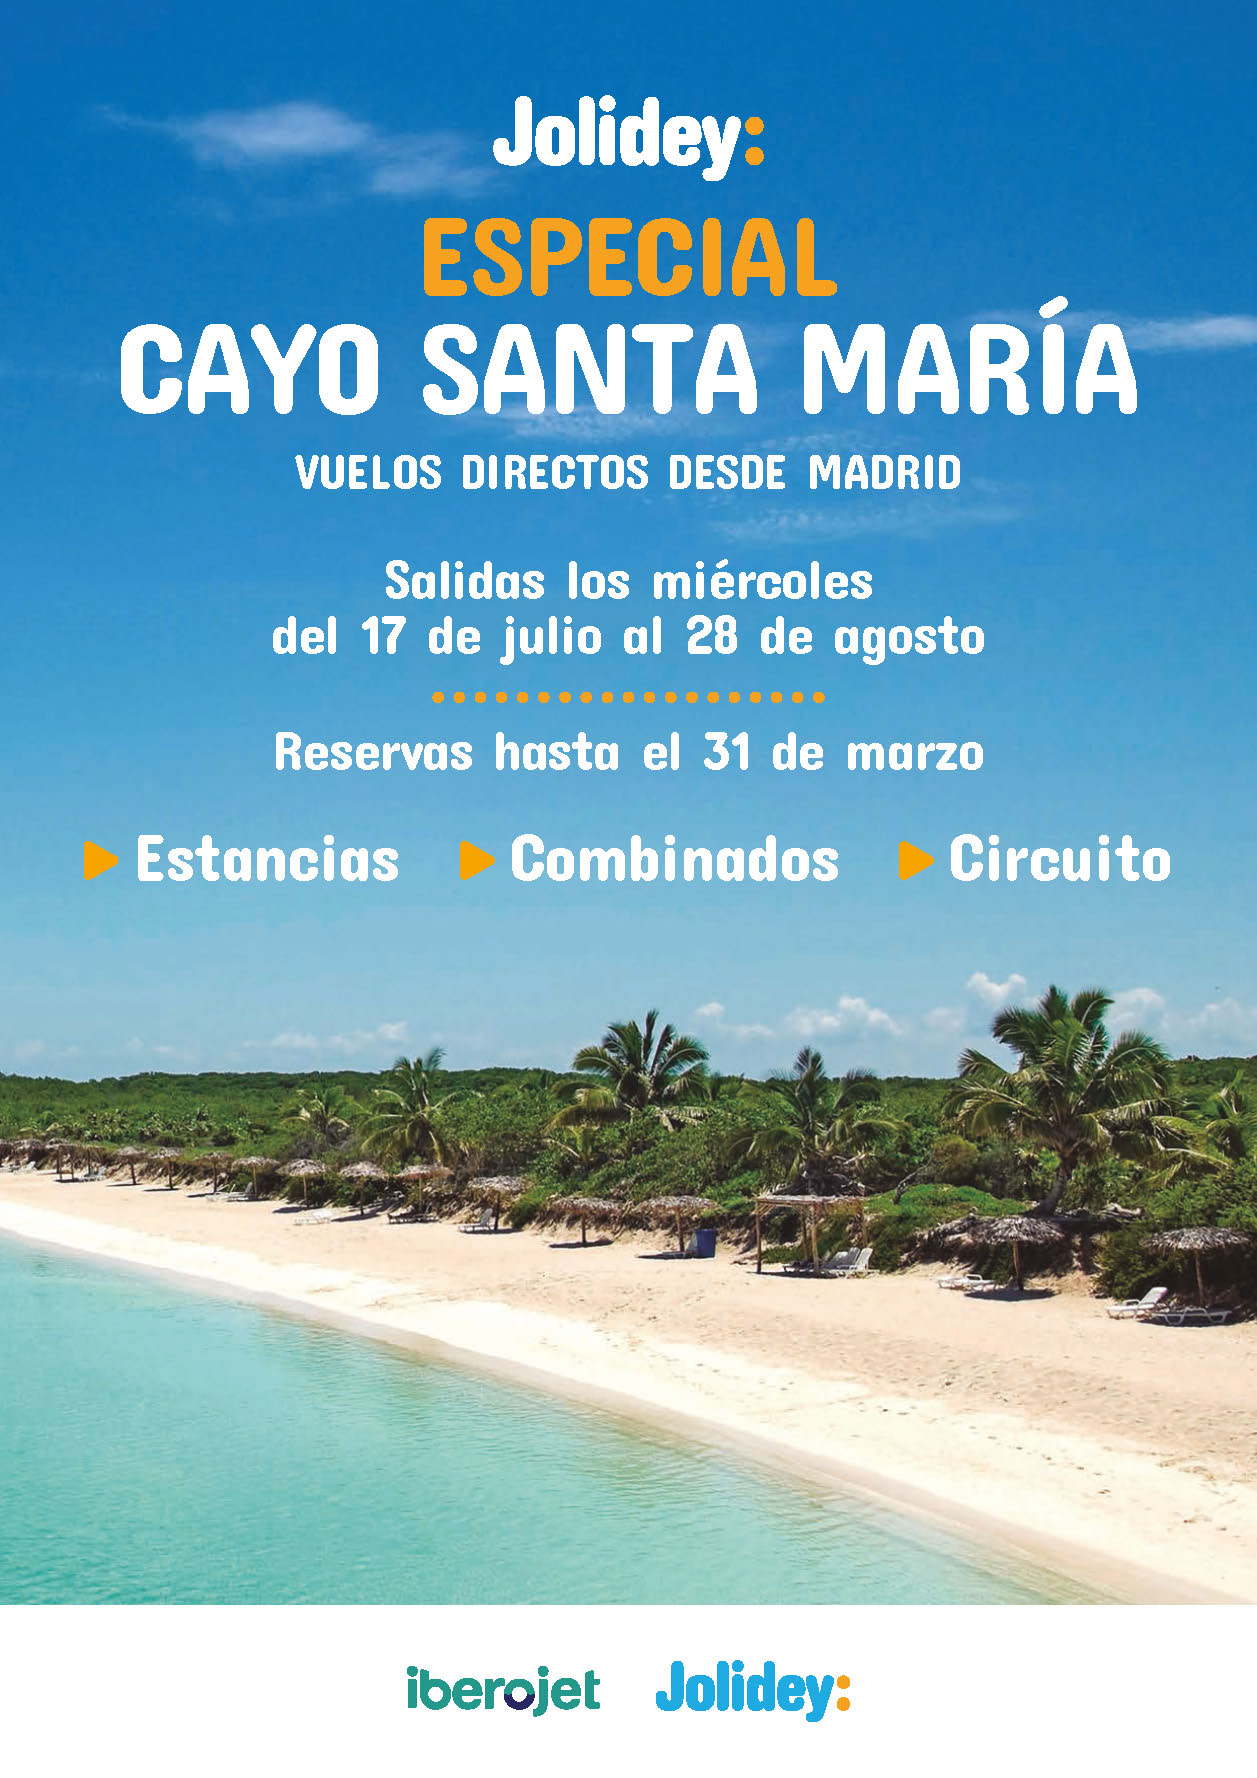 Oferta Jolidey Cuba estancias combinados y circuitos con Cayo Santa Maria 9 dias salidas Julio Agosto 2024 vuelo directo desde Madrid